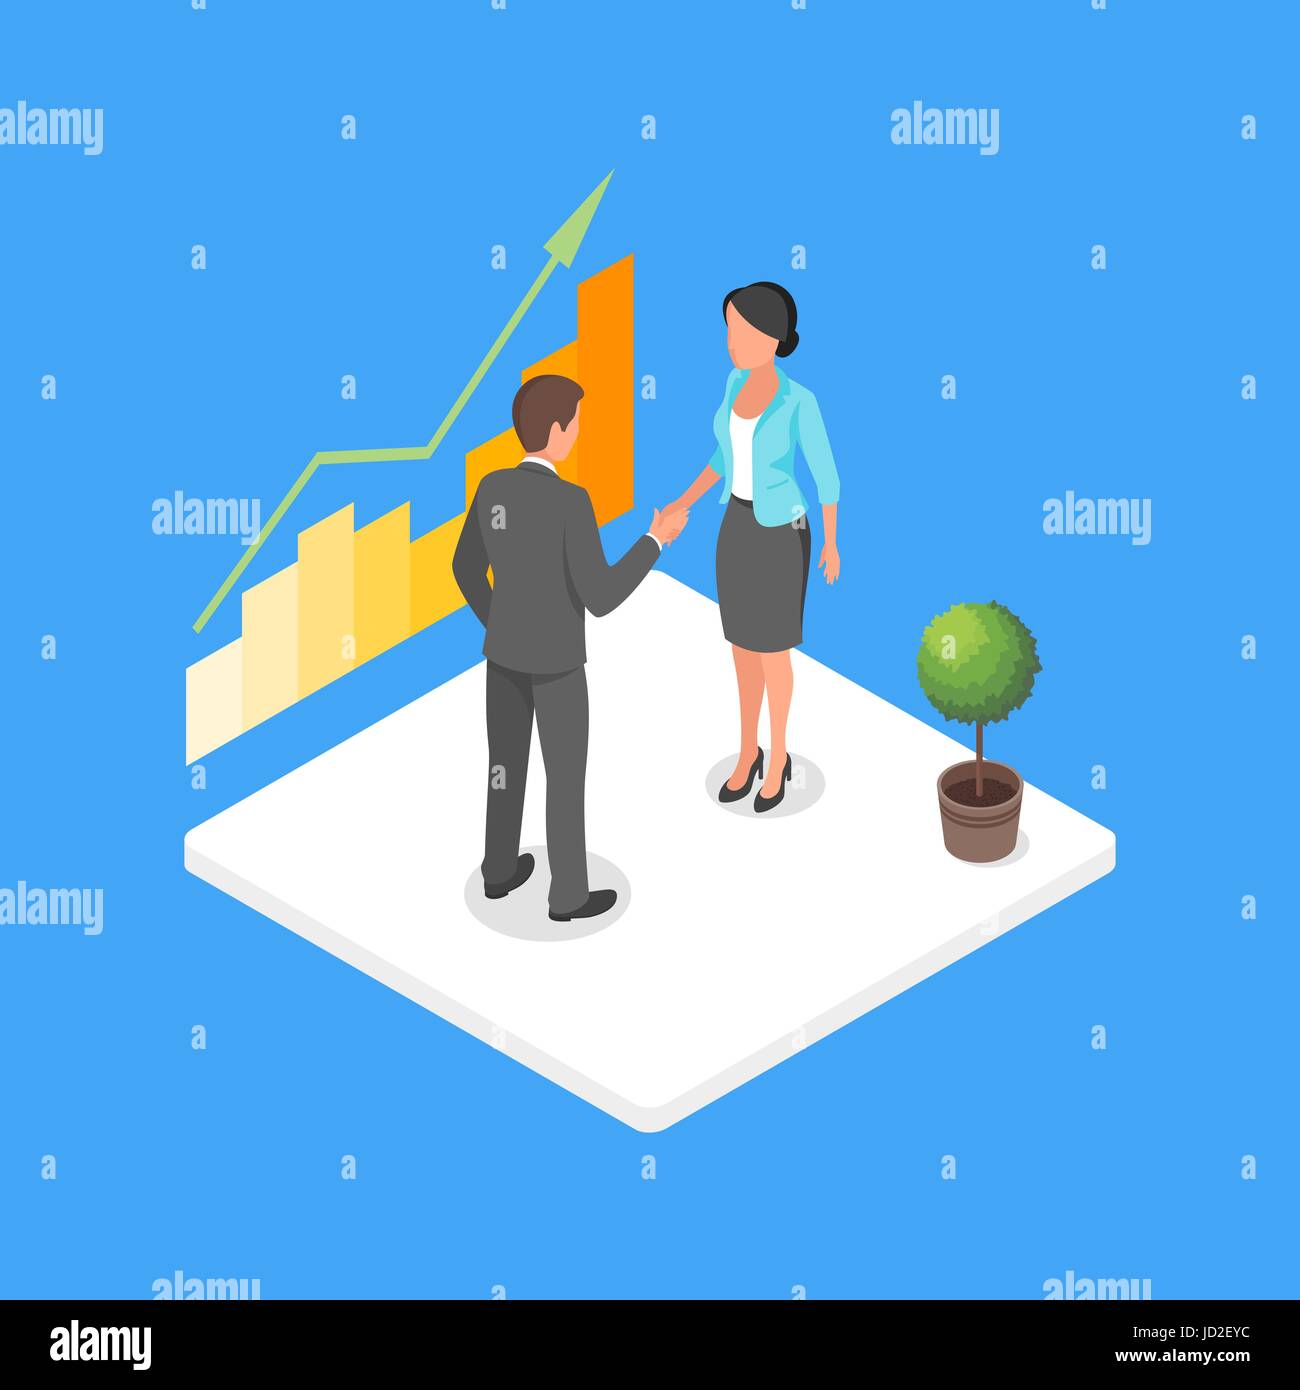 3D isométrique vecteur illustration de deux personnes faisant face et serrer la main d'accord. Illustration de Vecteur